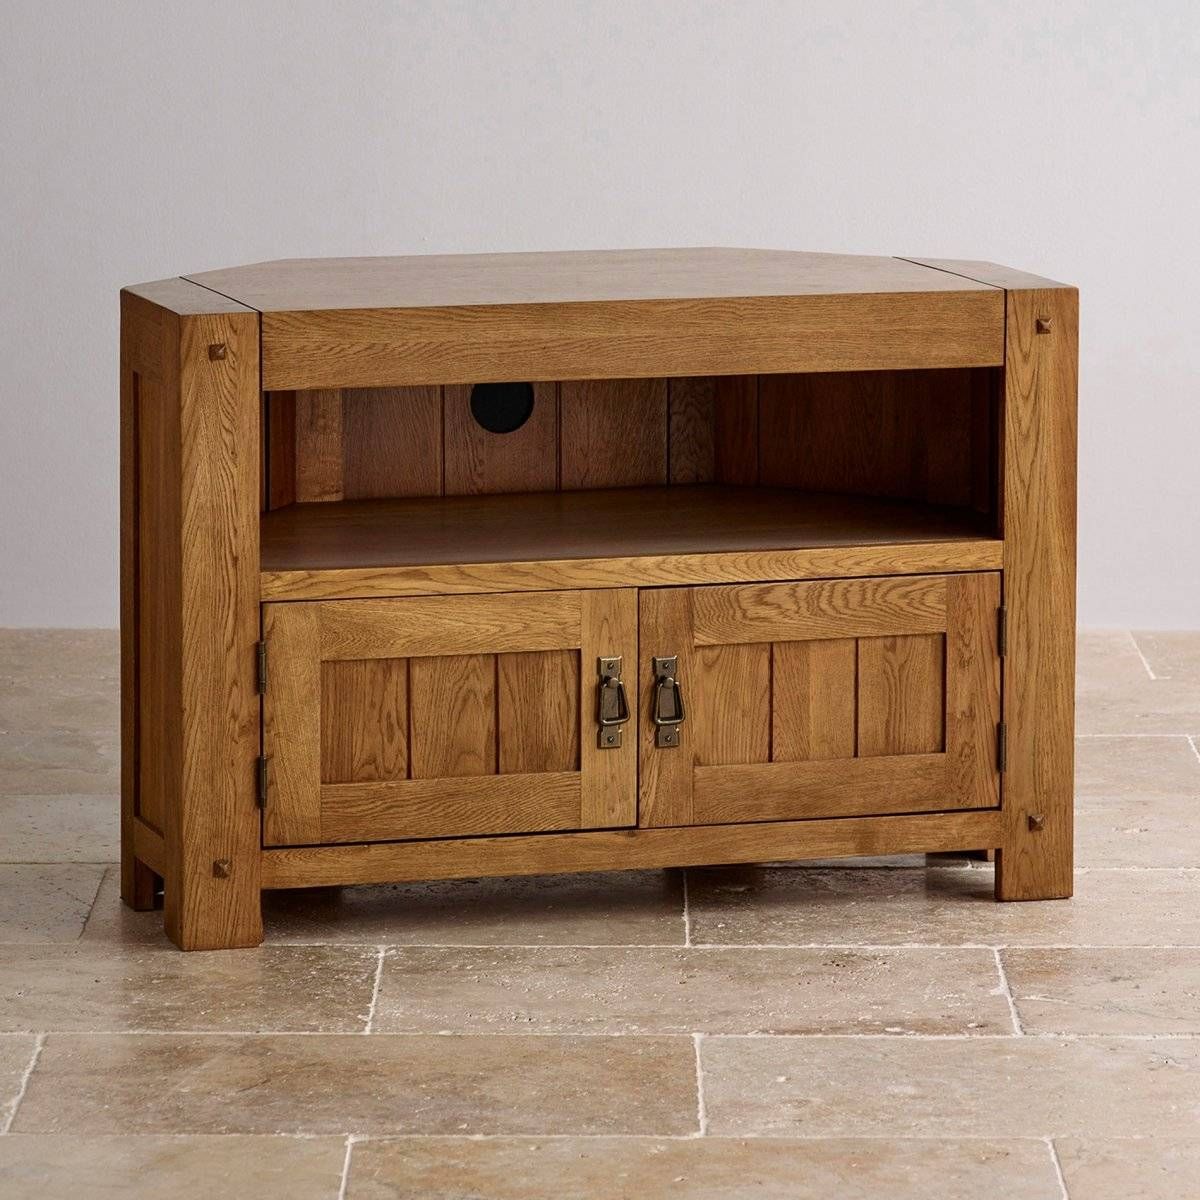 Quercus Corner Tv Cabinet In Rustic Oak | Oak Furniture Land Throughout Rustic Corner Tv Stands (View 7 of 15)